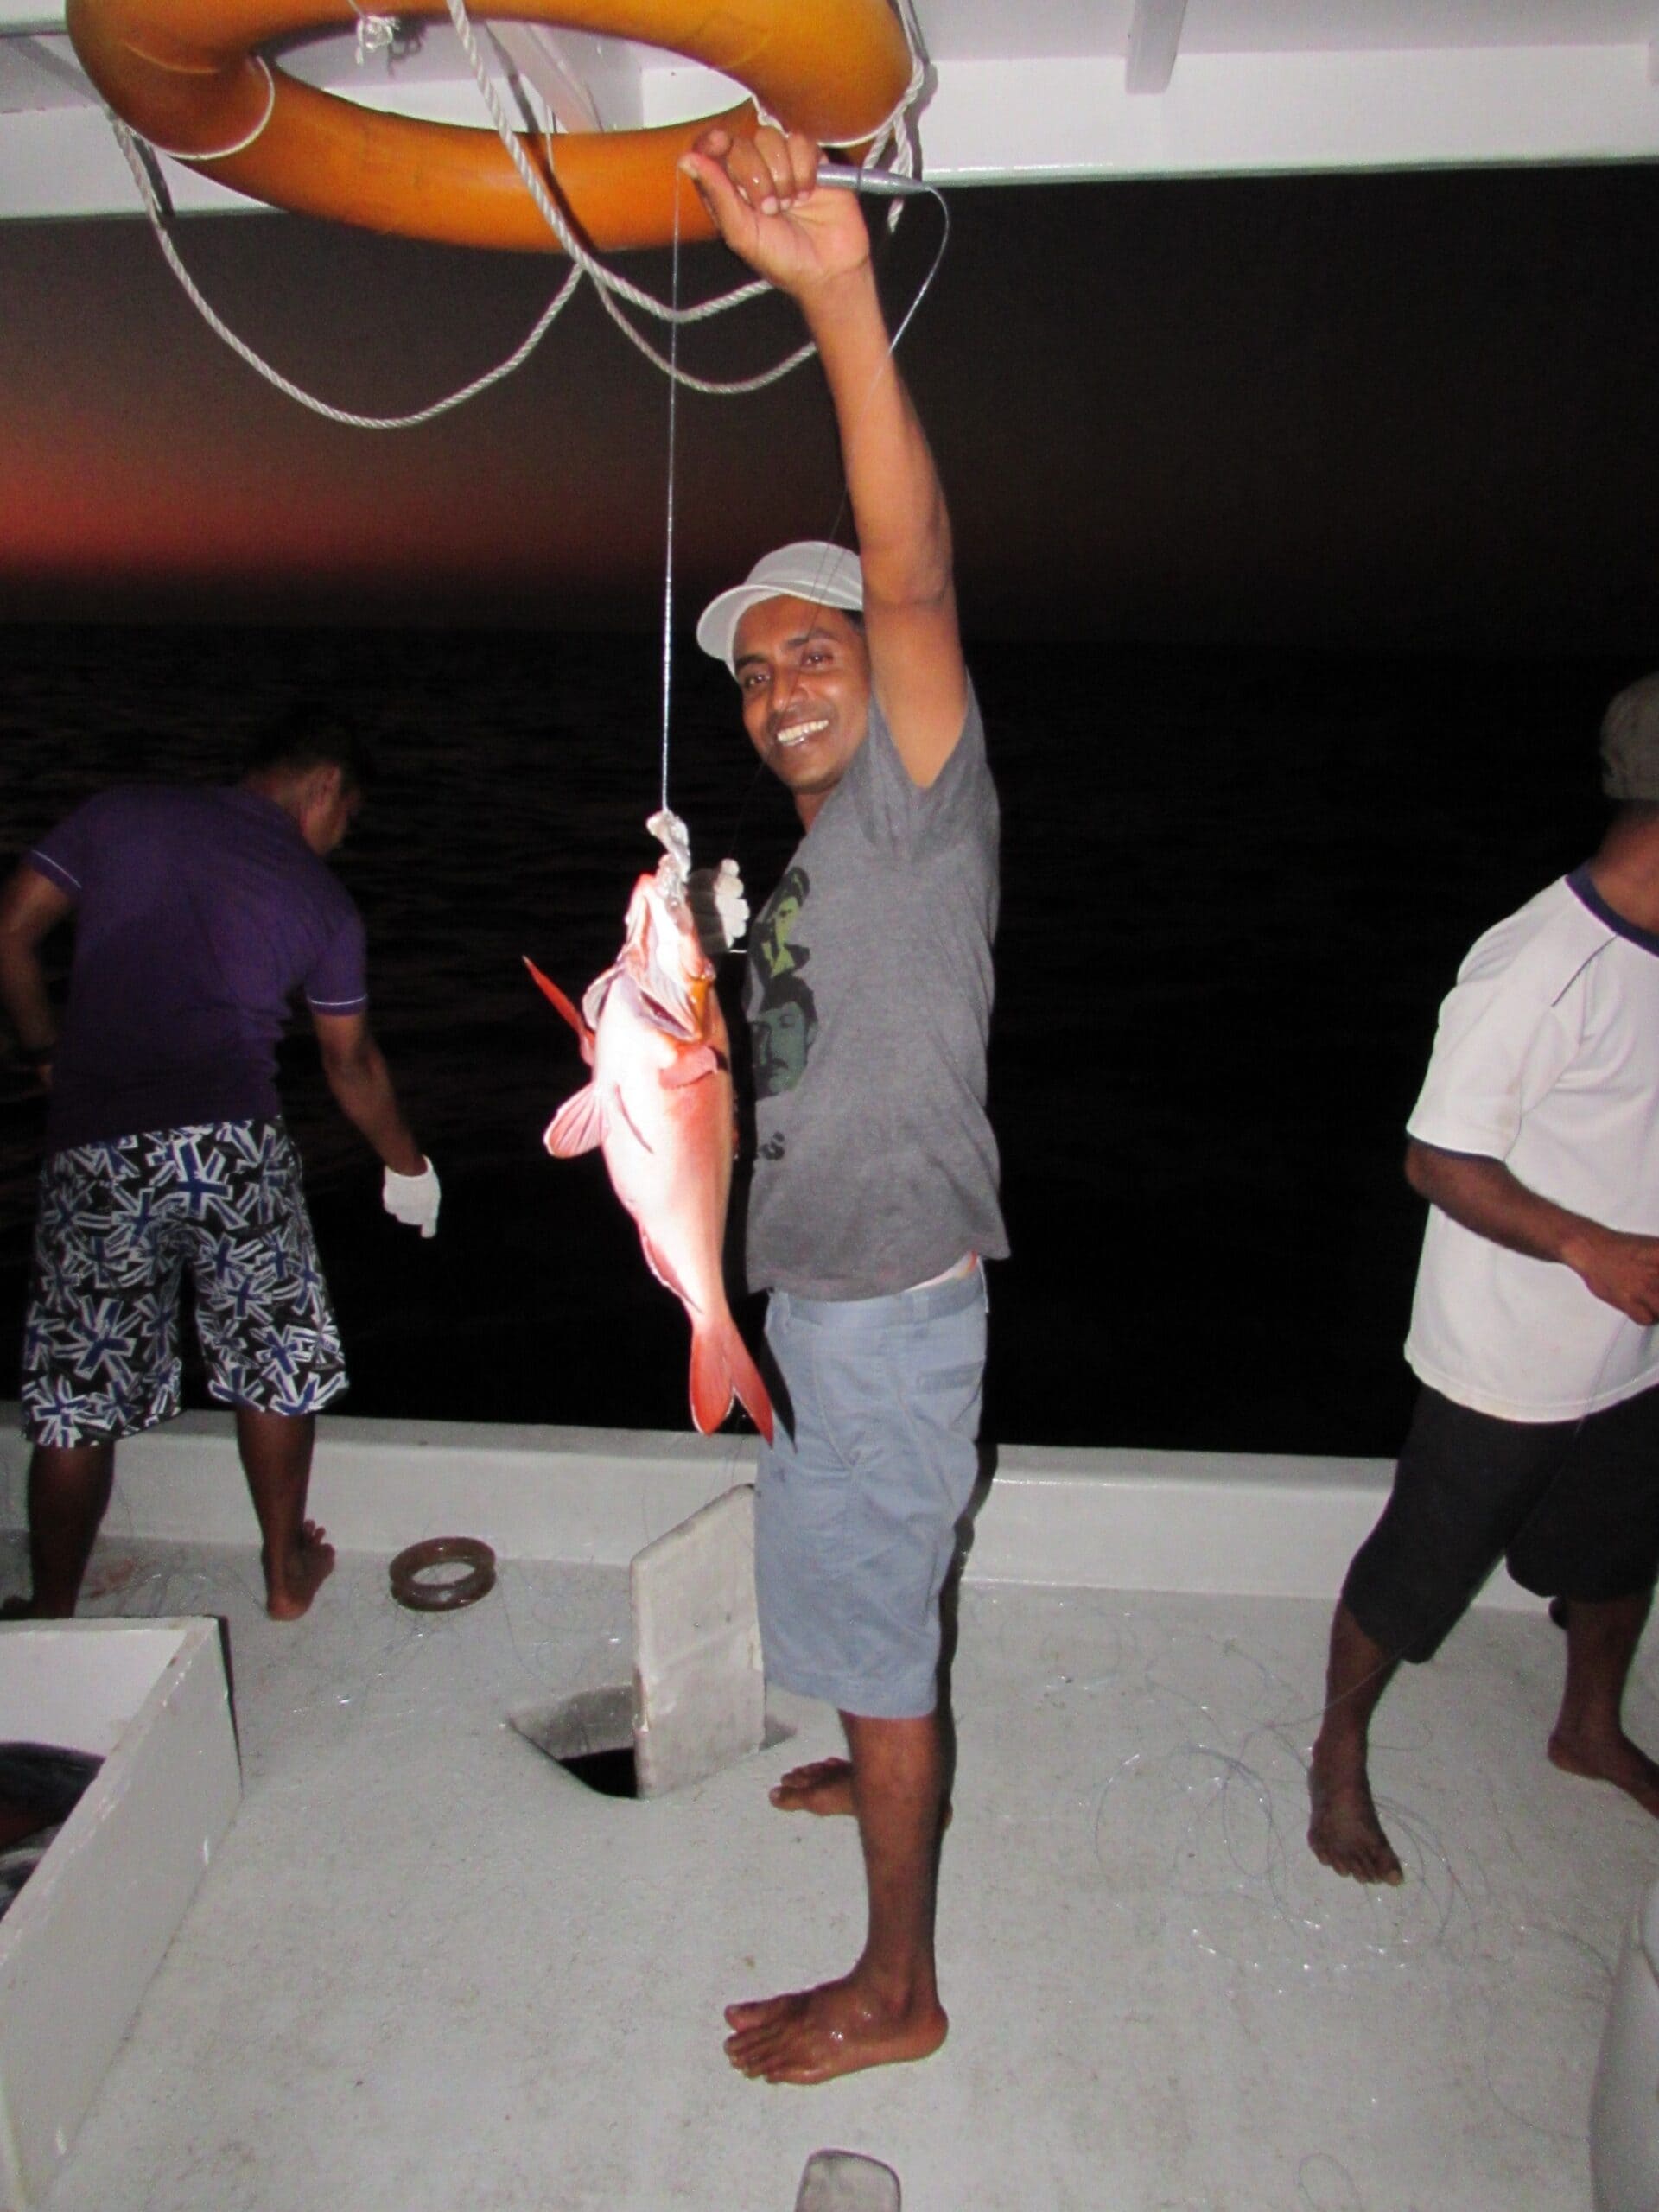 Fischen mit Maledivern - Reisen in Style Reisebericht Malediven